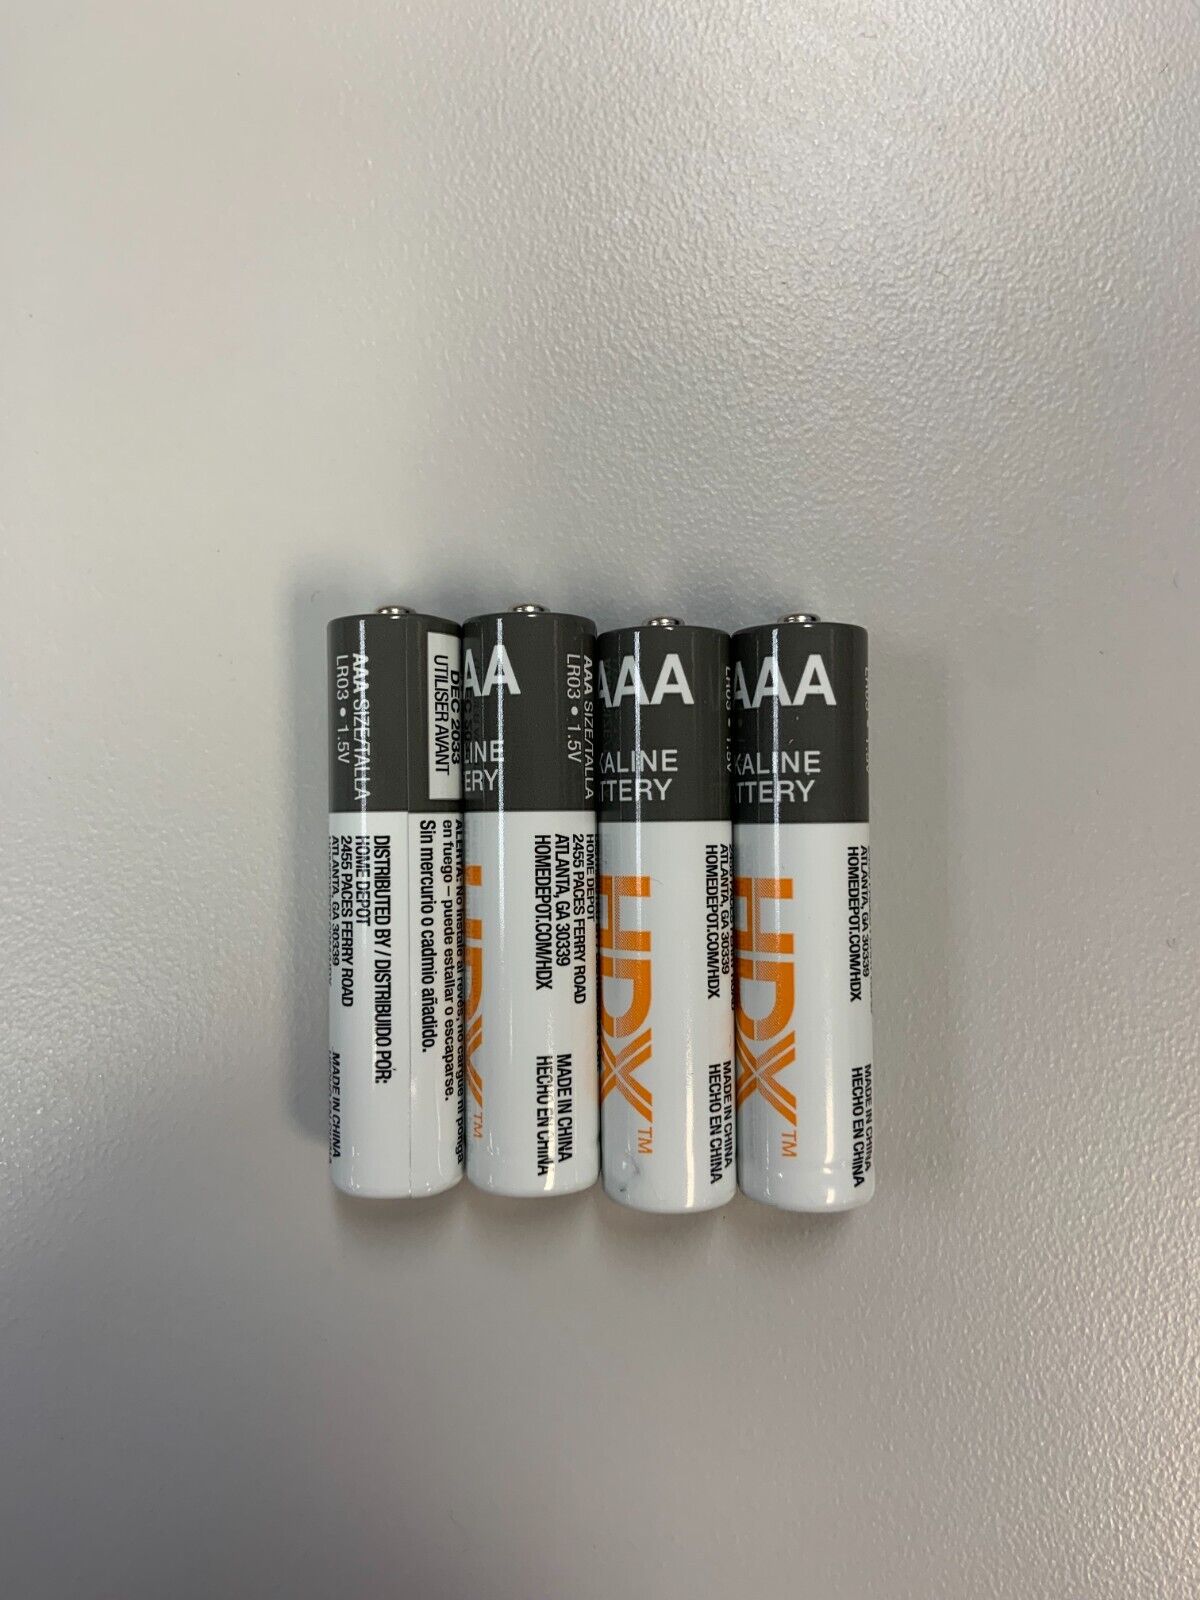 NEW Lot of 4 HDX AAA Alkaline Batteries